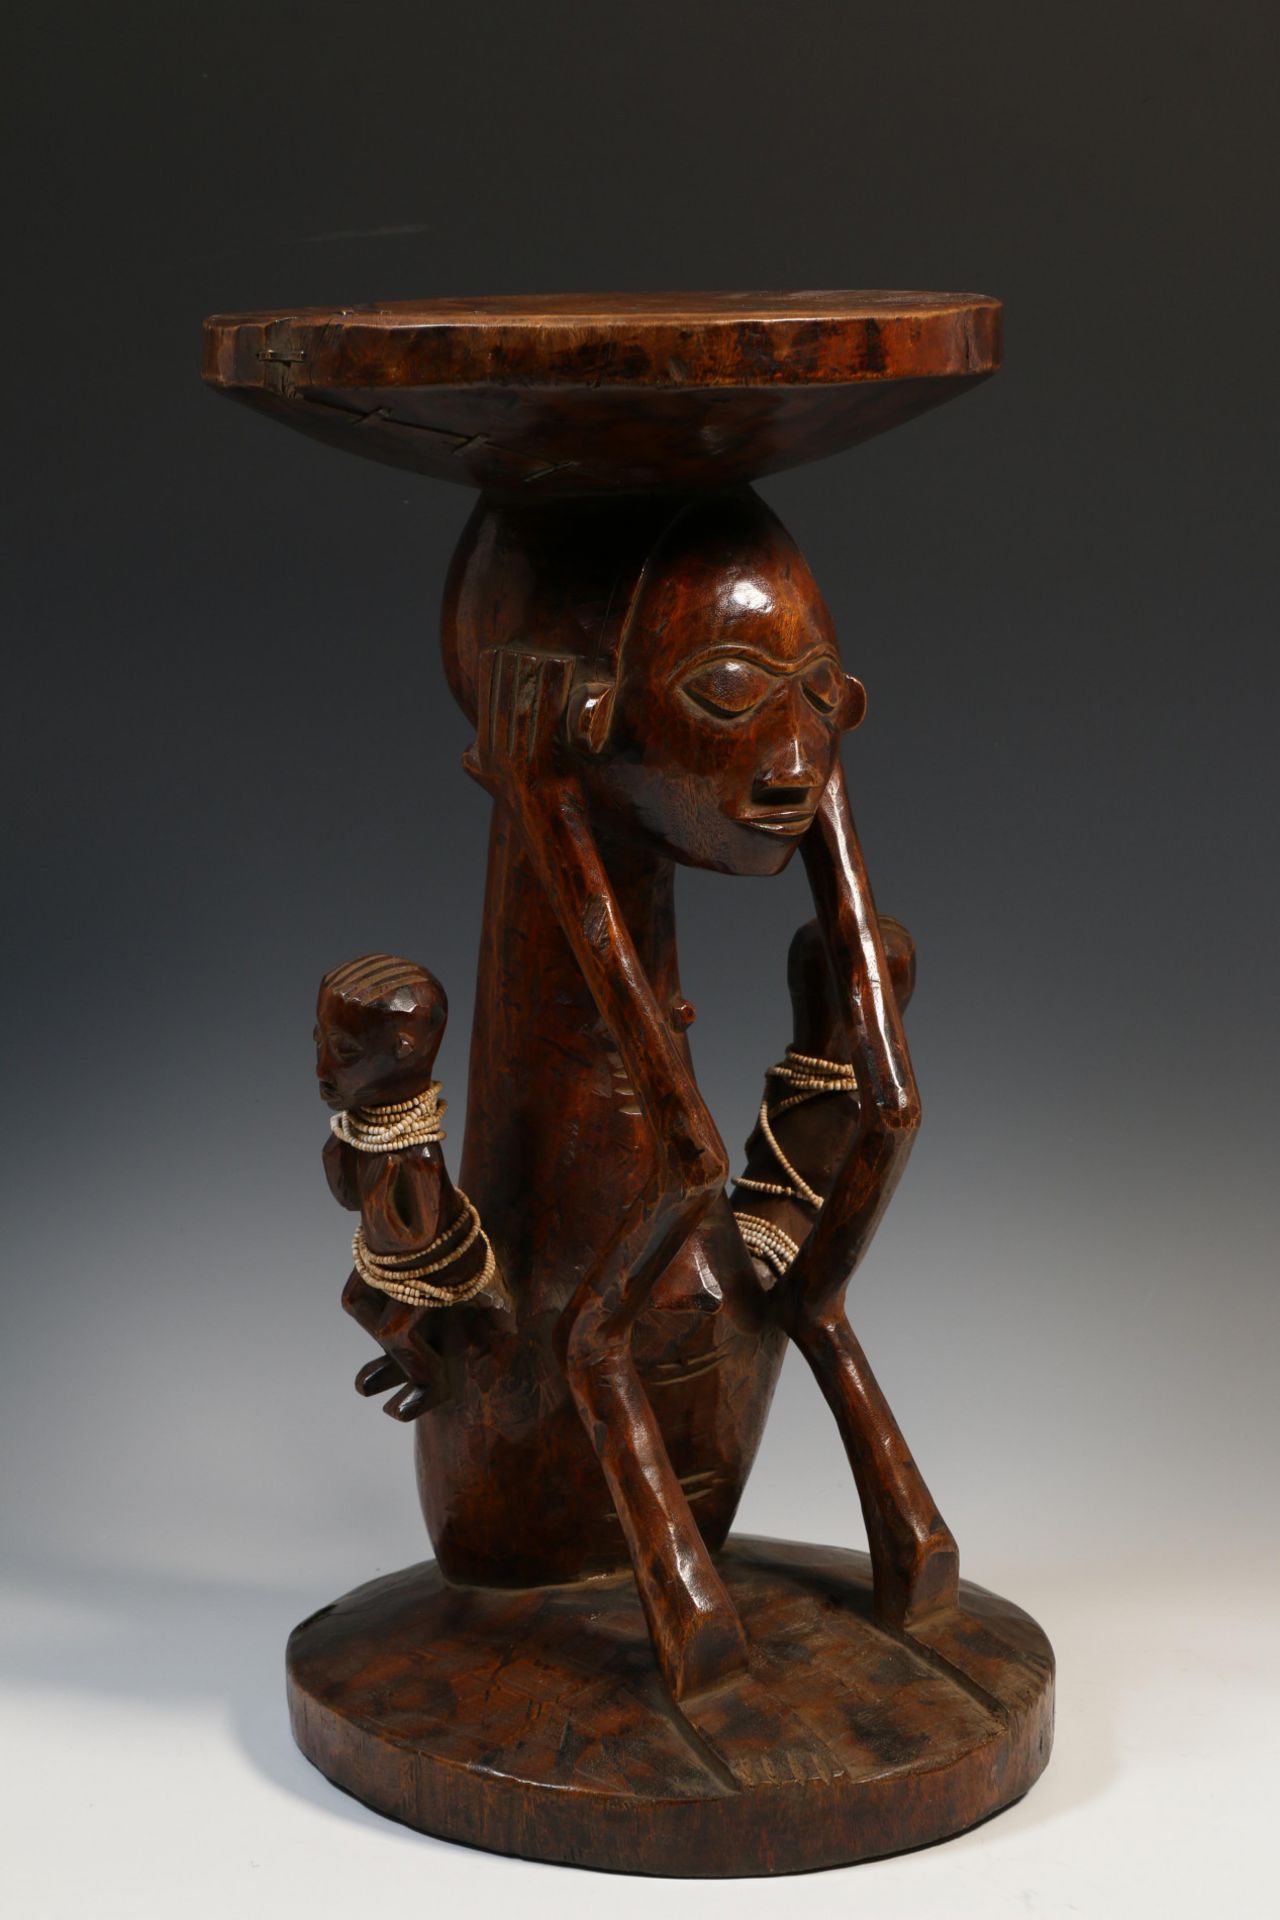 DRC, wooden caryatid stool, local repairs